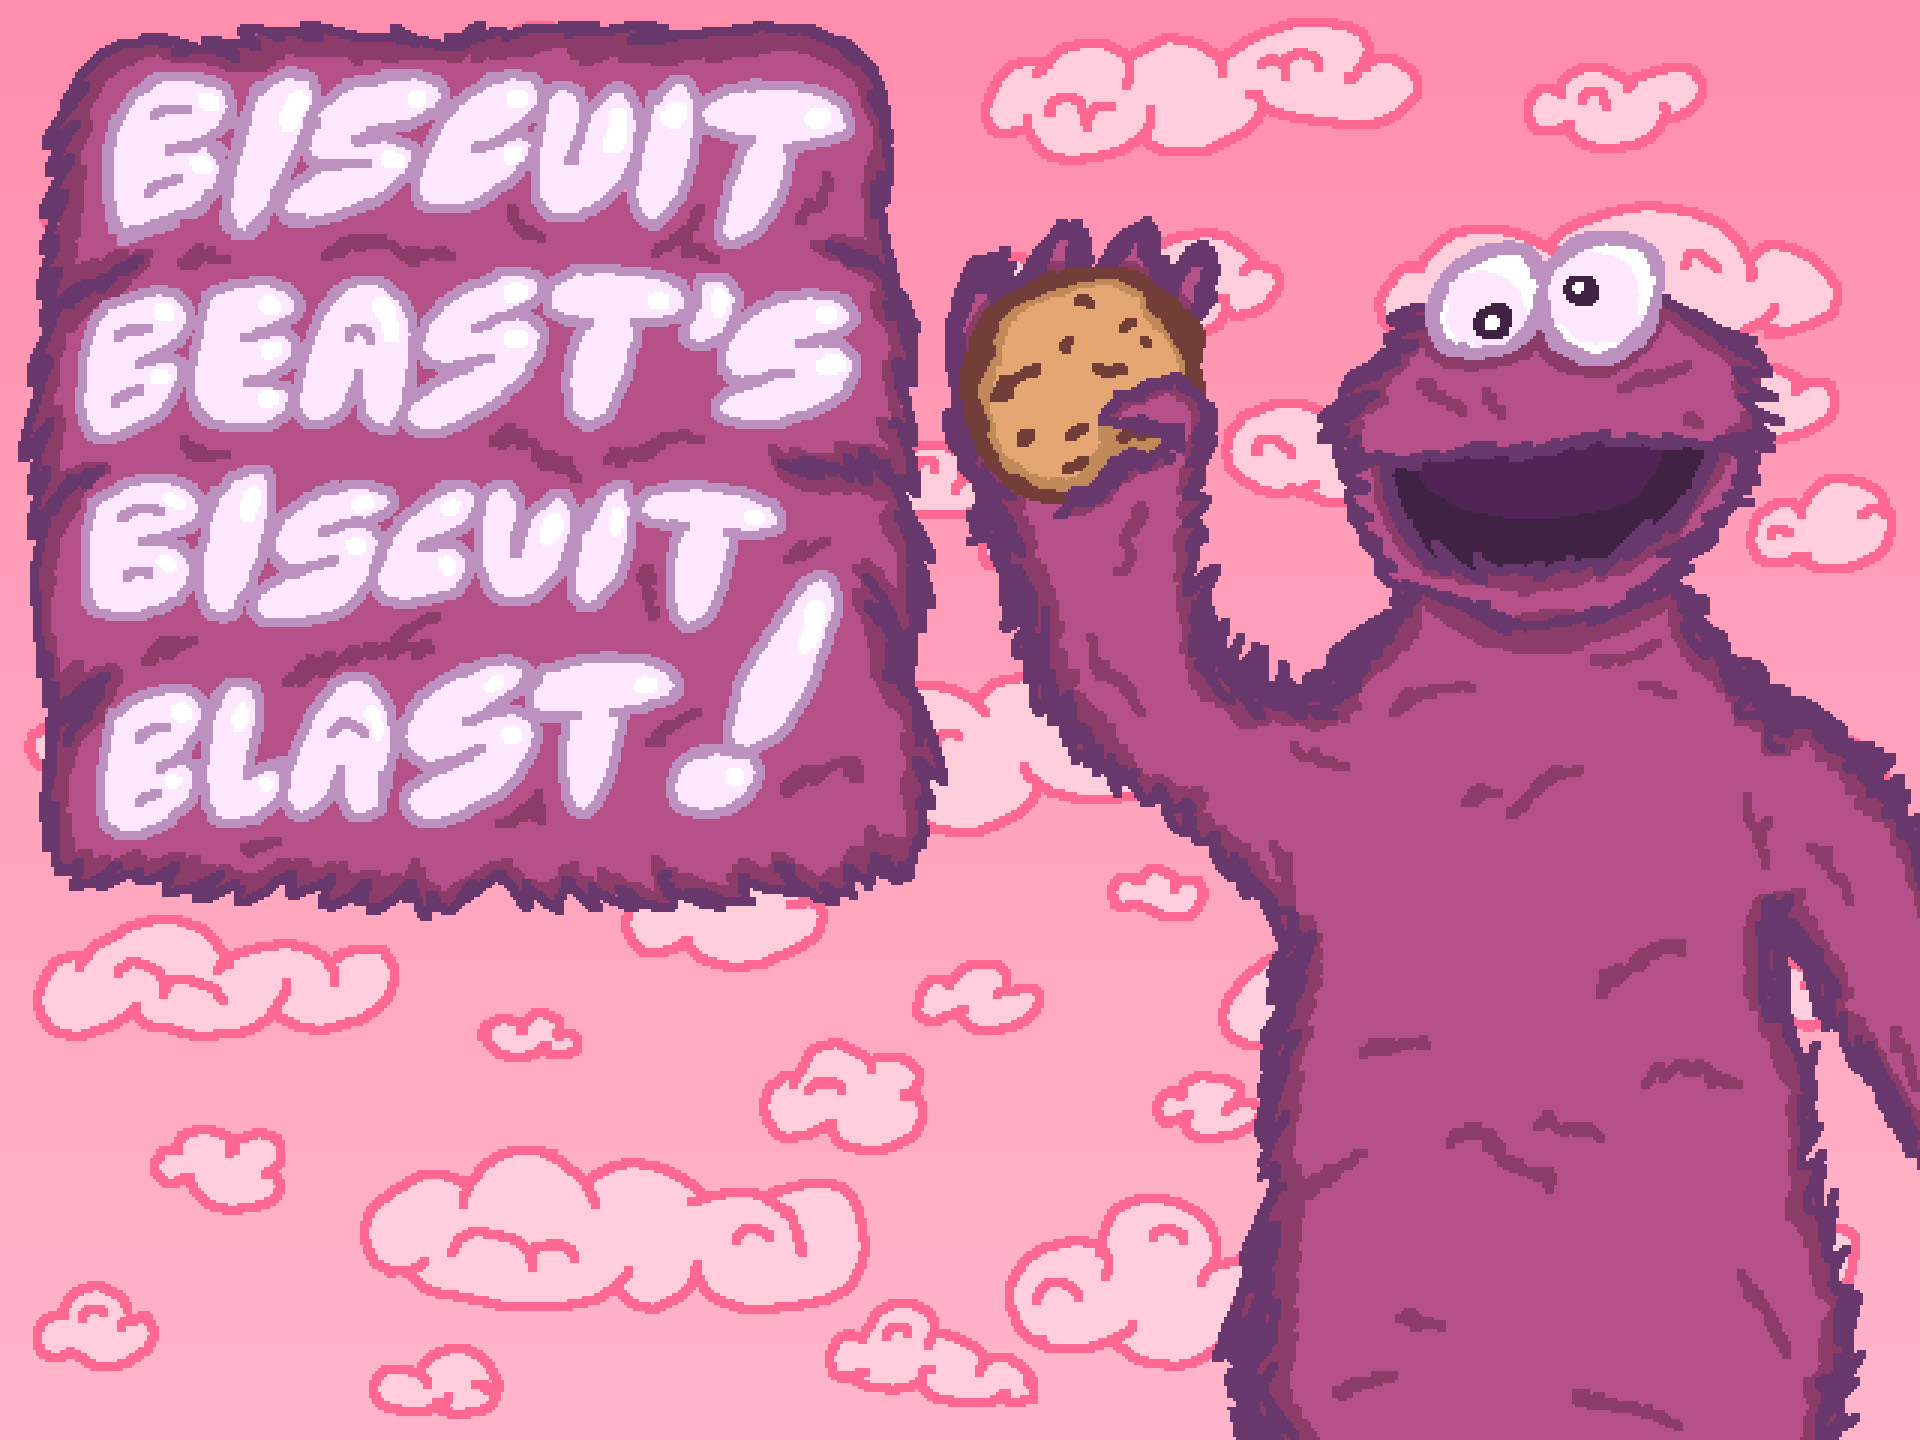 Biscuit Beast's Biscuit Blast!